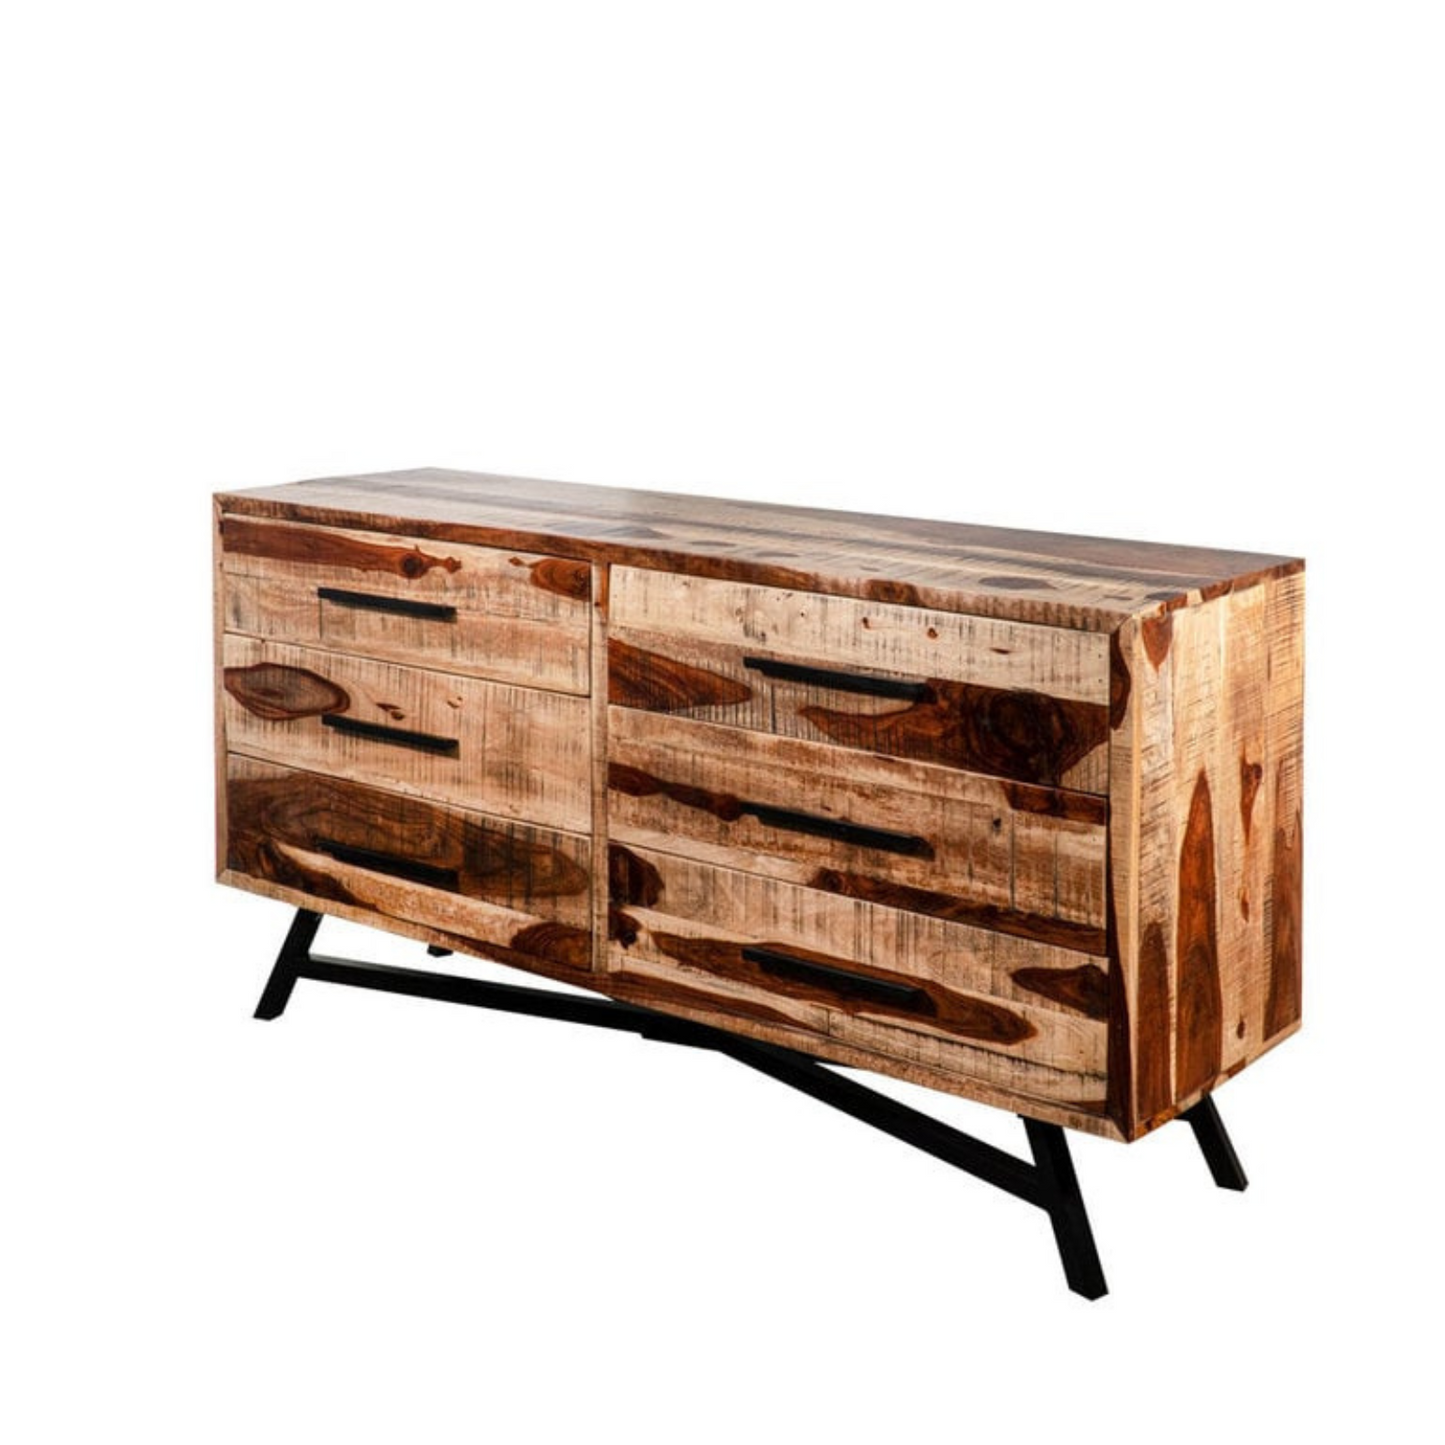 Dresser 58" - Sheesham Wood